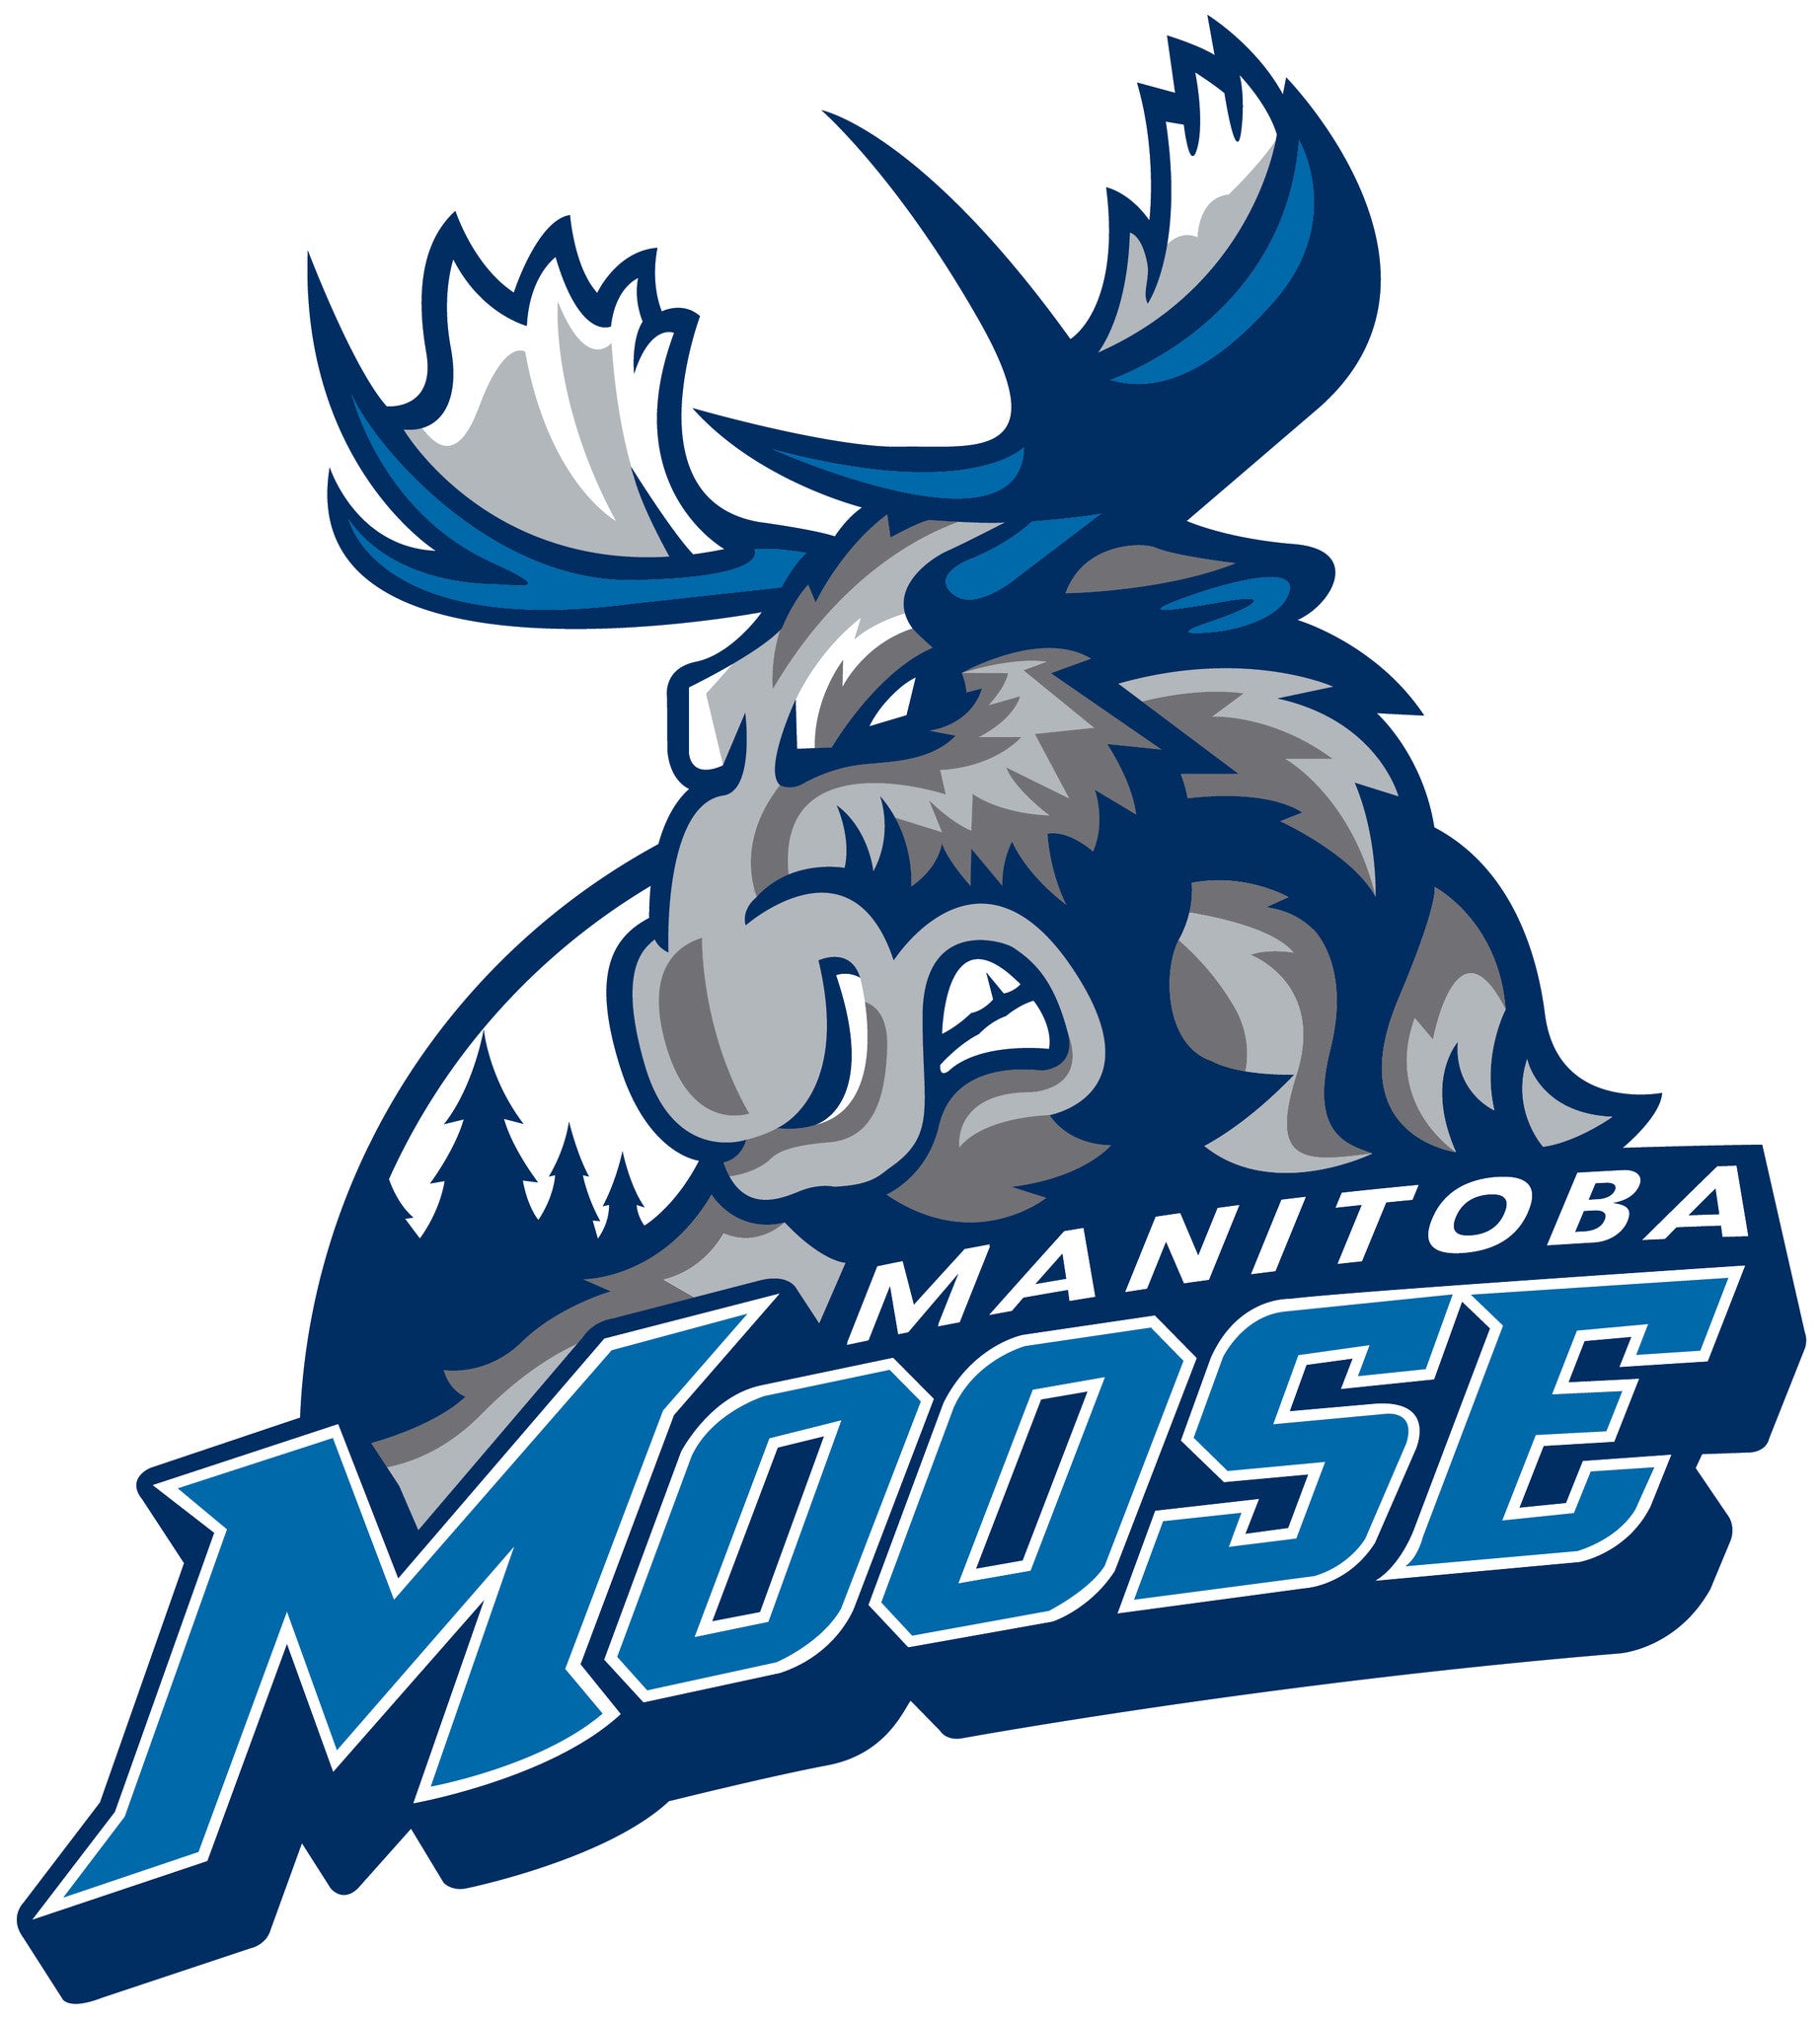 Manitoba Moose WASAC Jersey